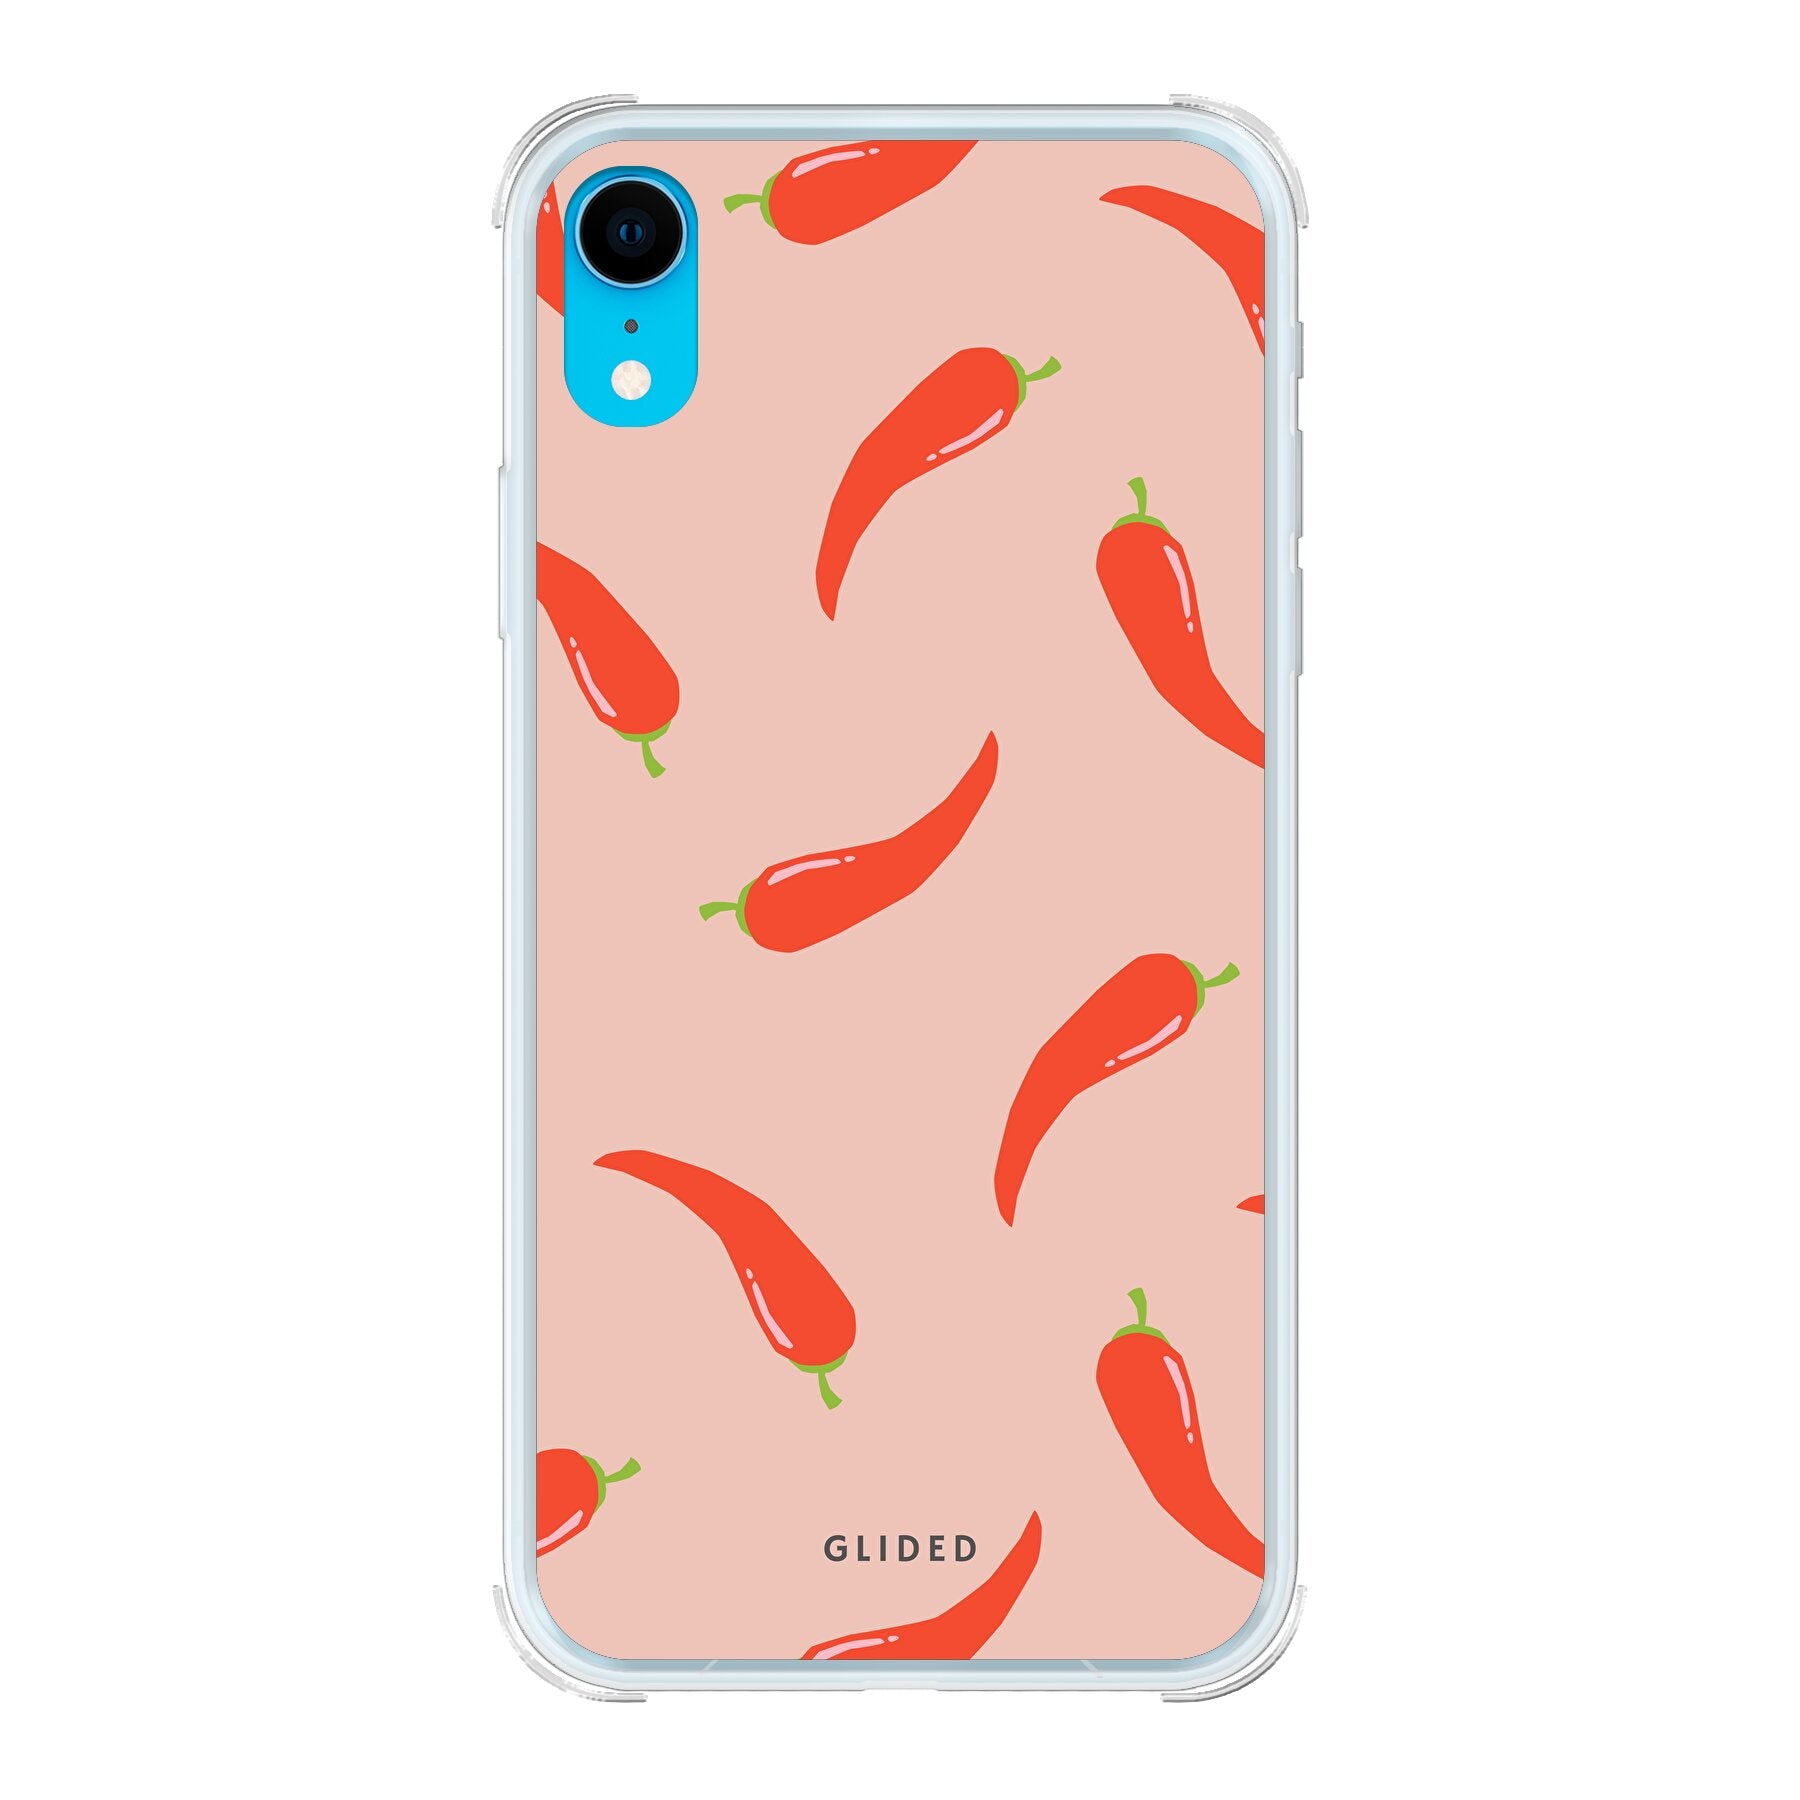 Spicy Chili - iPhone XR - Bumper case